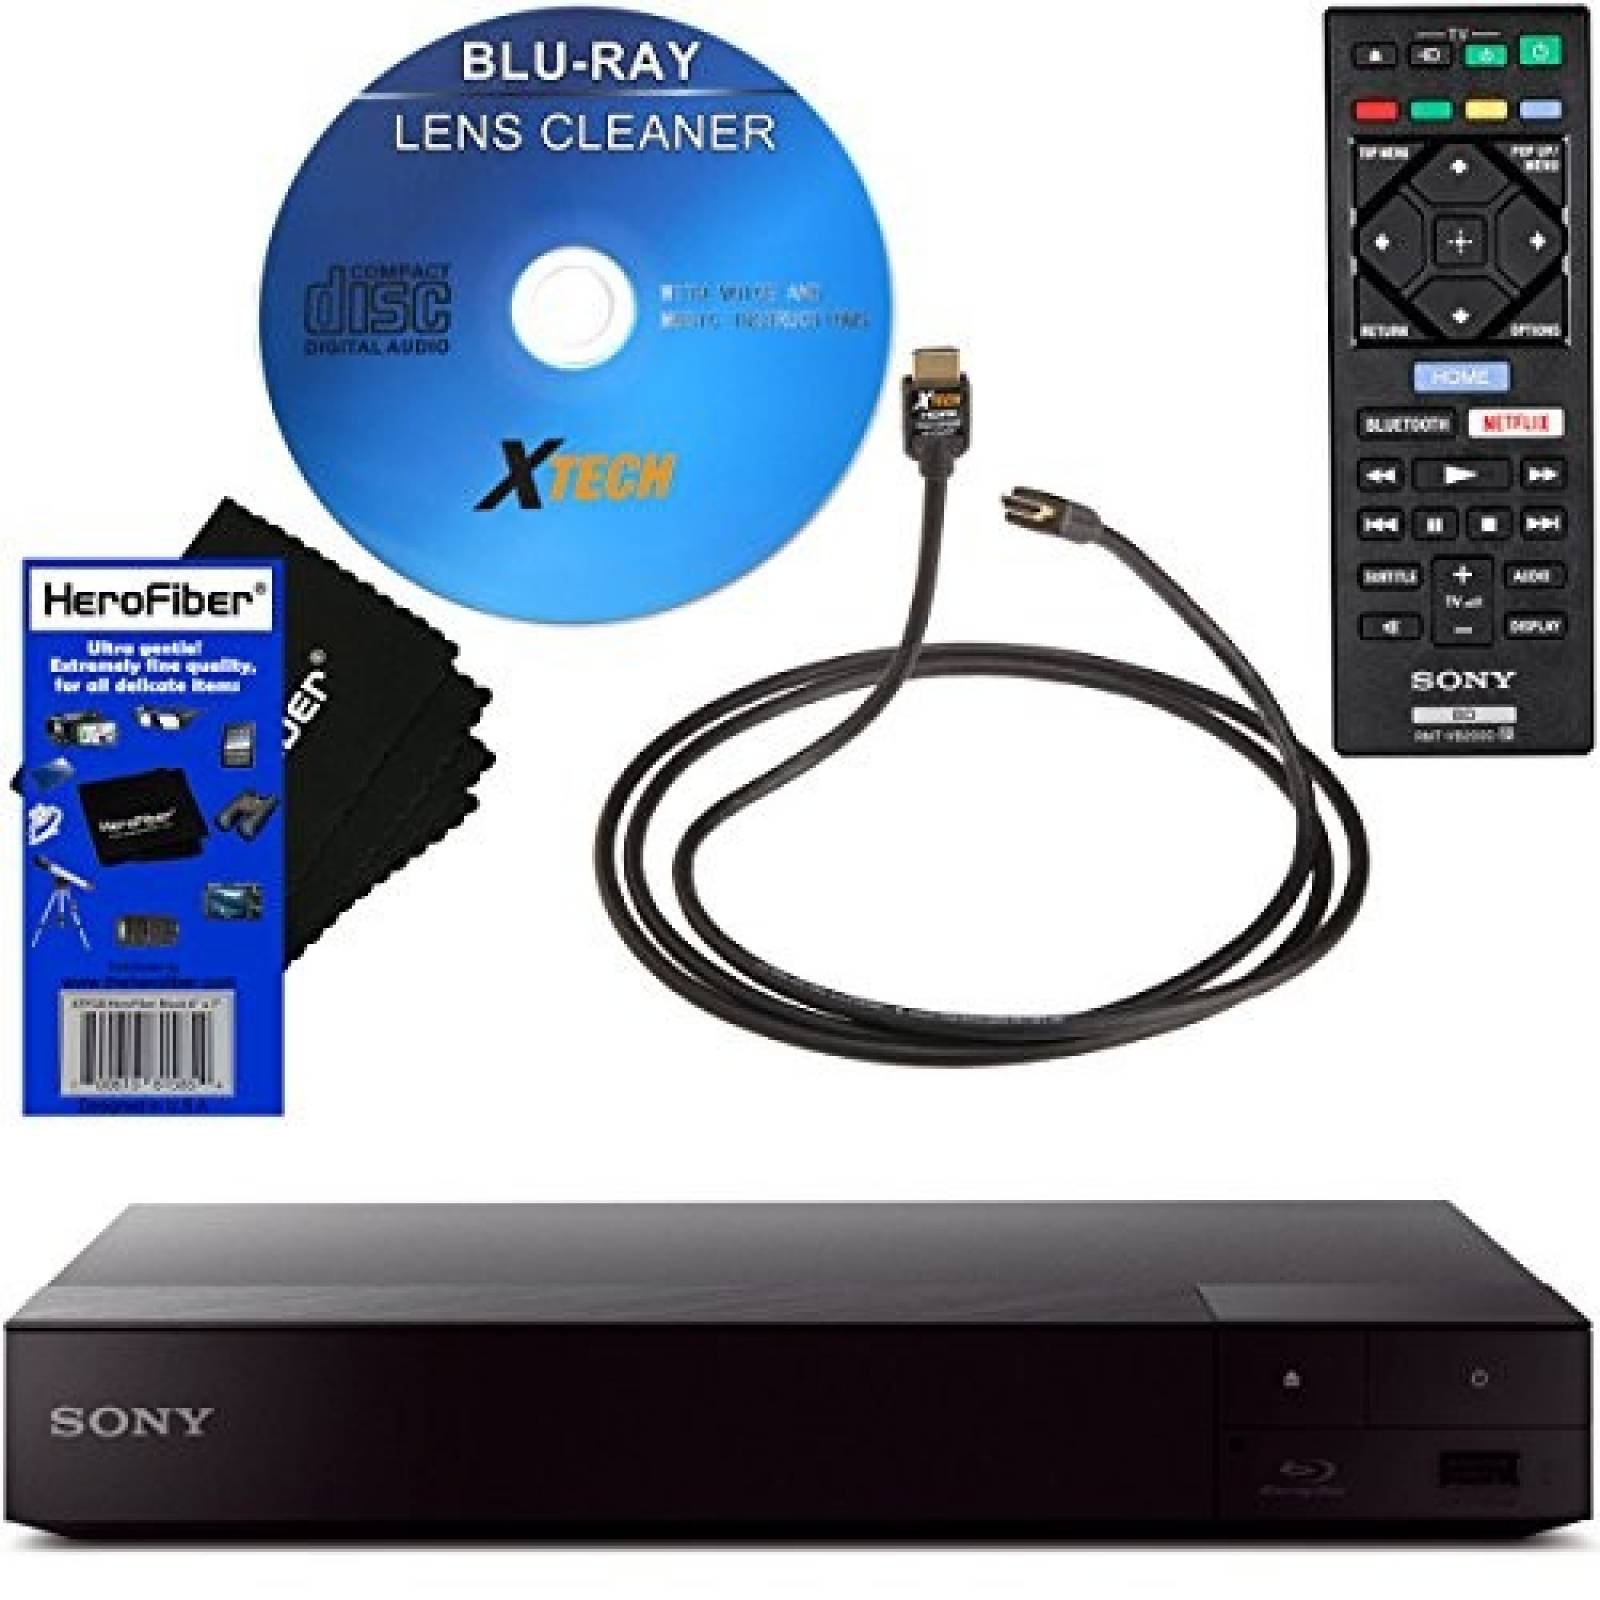 Reproductor Blu-ray HeroFiber BDPS6700 control + accesorios